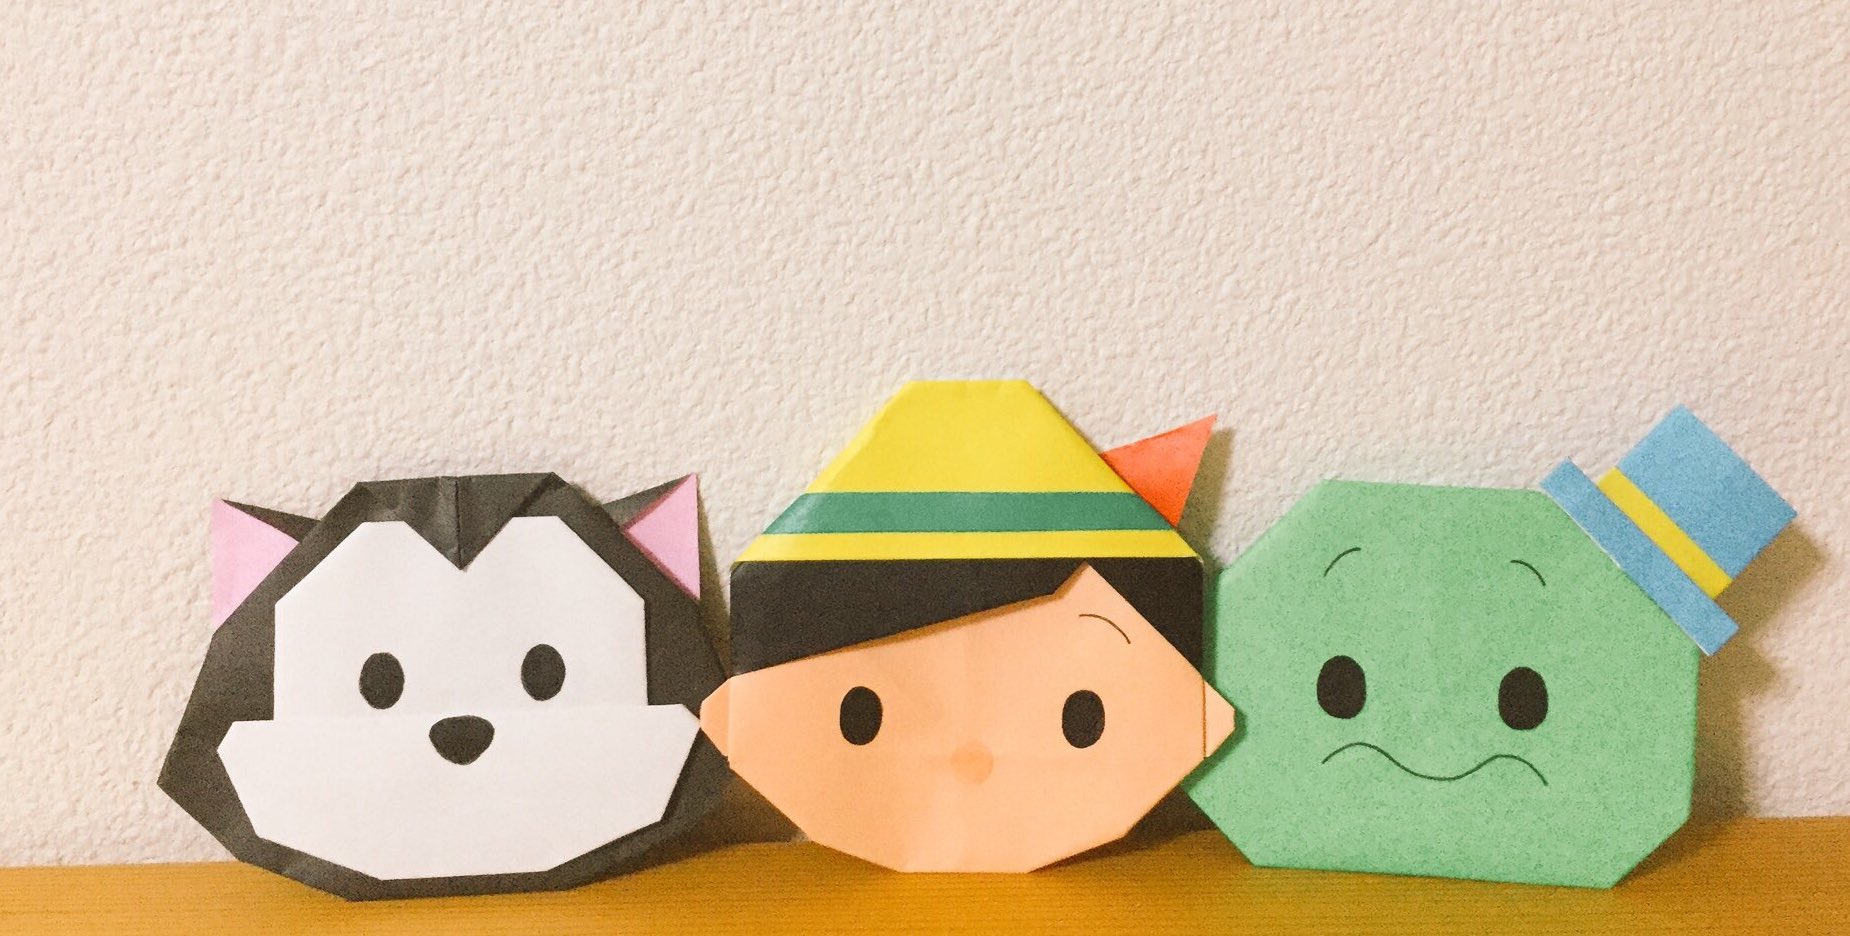 Origami V Twitter ツムツムの フィガロ ピノキオ ジミニー クリケット を作ってみました ピノキオ のキャラクター いしばしなおこさんの本 ディズニーツムツムちょこっとメモ折り紙あそび より ツムツム ピノキオ 折り紙 T Co